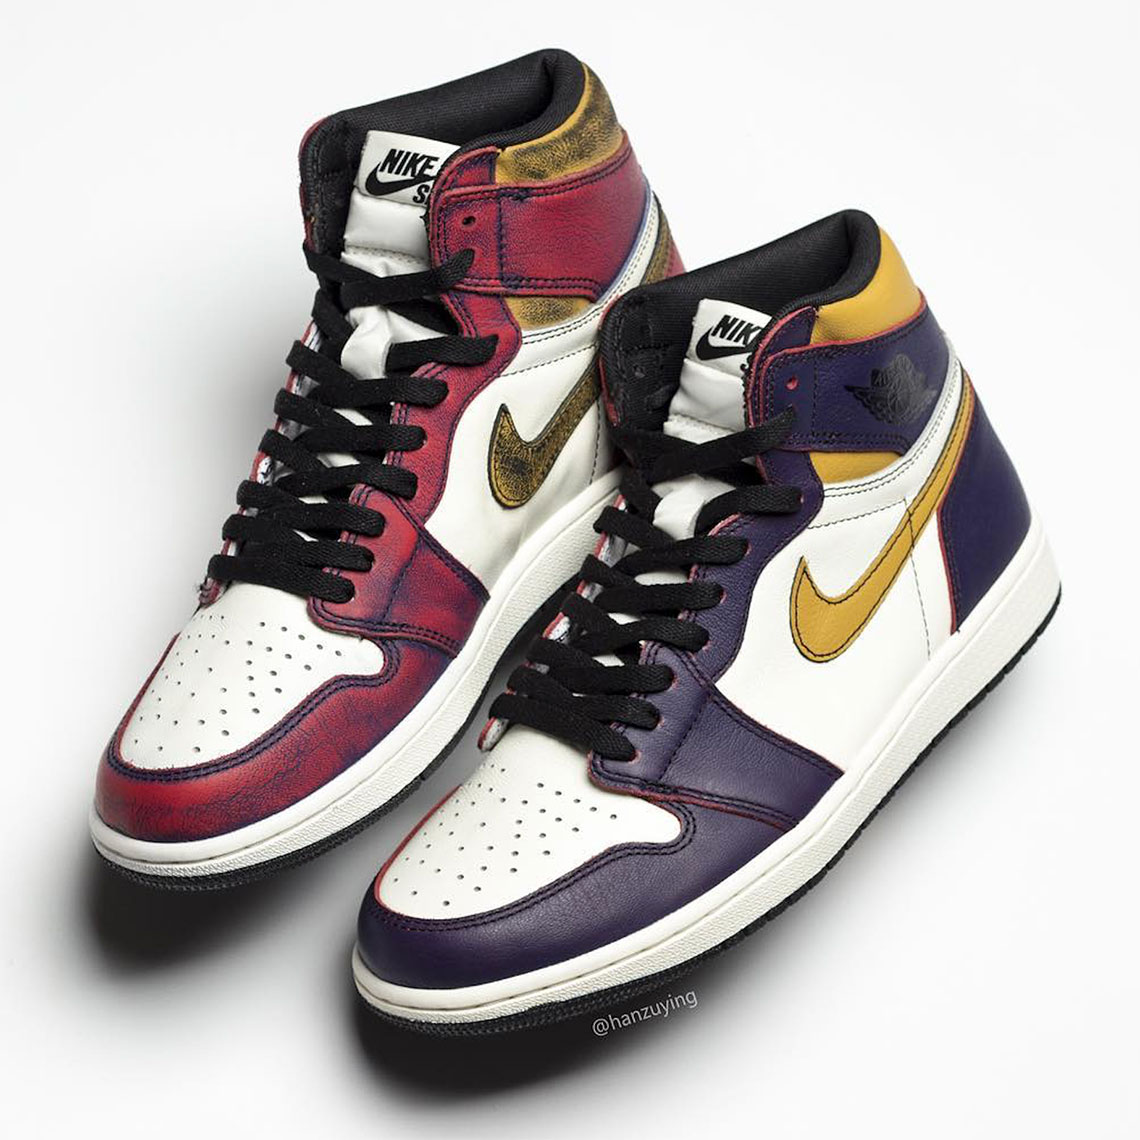 Air Jordan 1 SB Shoes - Lakers Bulls | SneakerNews.com